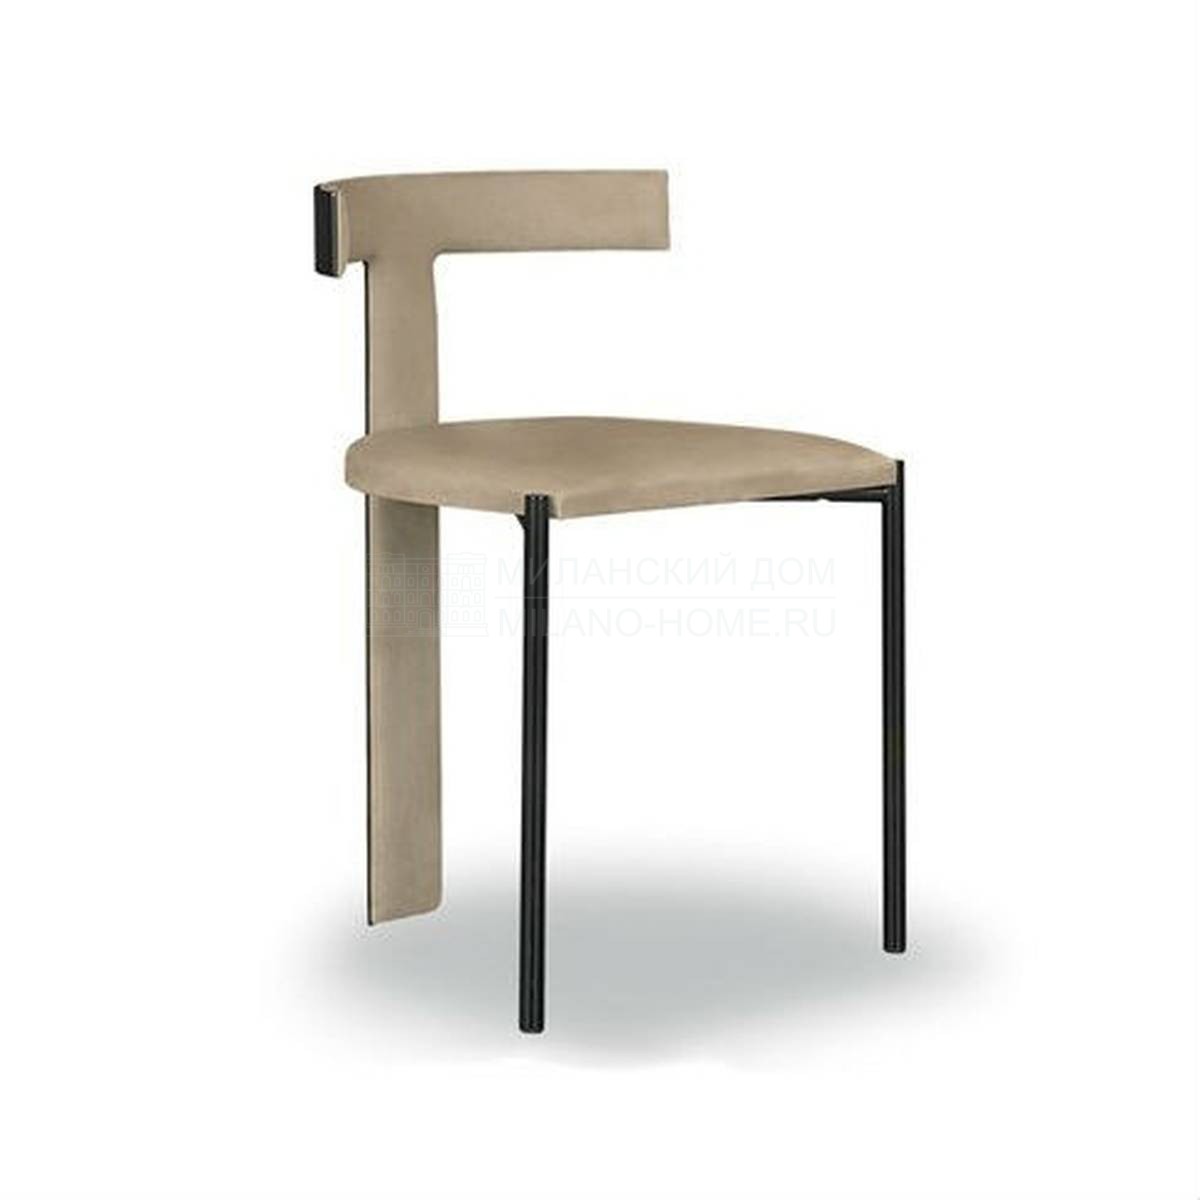 Кожаный стул Zefir chair из Италии фабрики BAXTER